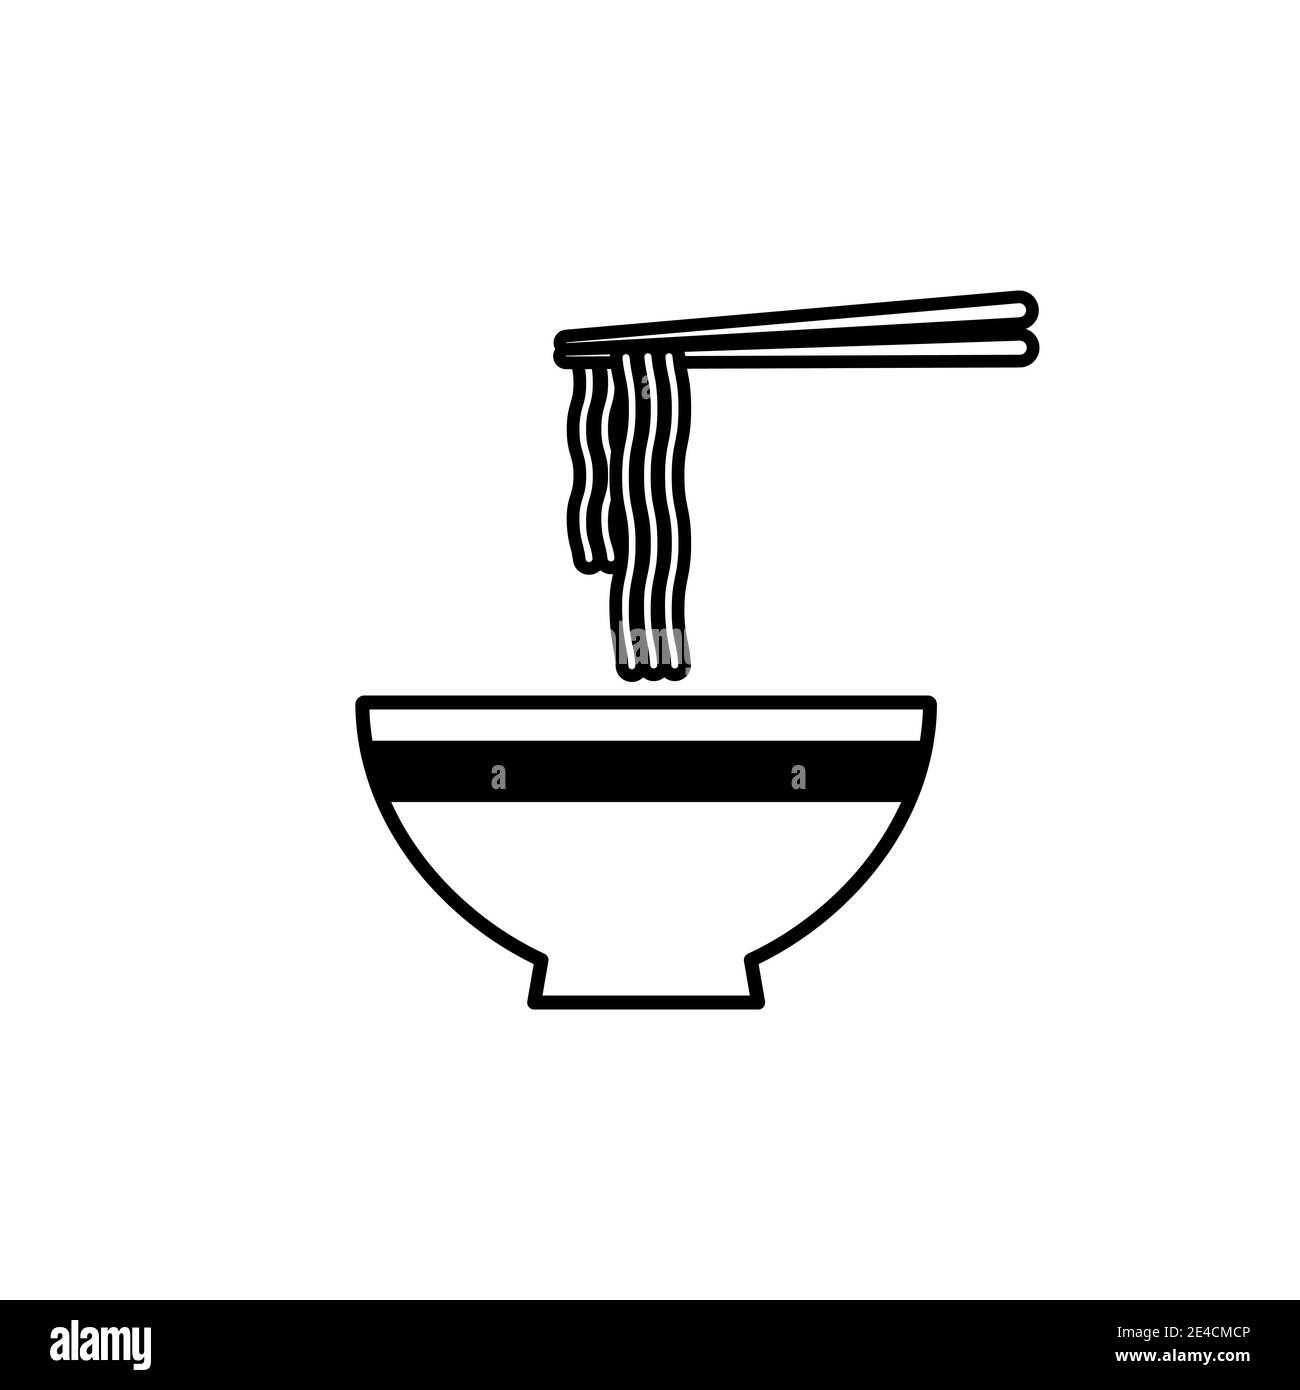 Ciotola per zuppa di noodle ramen con icona a bacchette. Ciotola di ramen icona noodle. Illustrazione Vettoriale